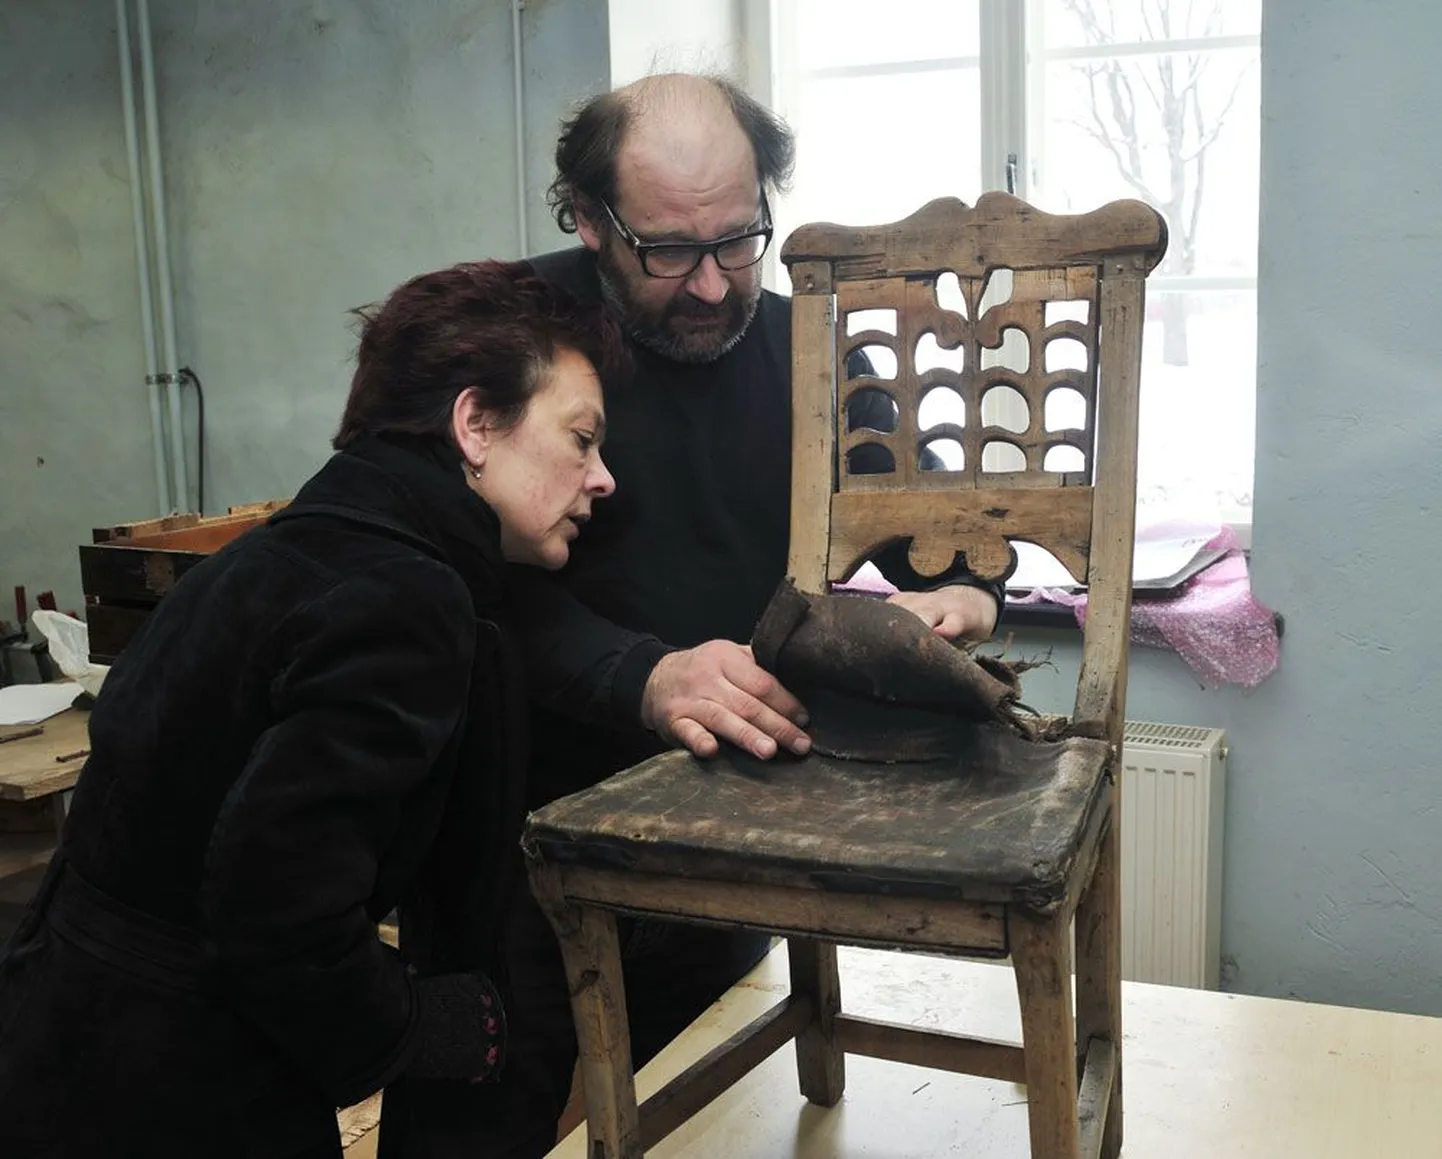 ERMi puidurestauraatorite osakonnas näitab konservaator Indrek Tirrul muuseumijuht Krista Arule haruldast ja vana Ruhnu tooli, mille polster tuleb ettevaatlikult lahti võtta, et tool väljapanekuks korda teha.